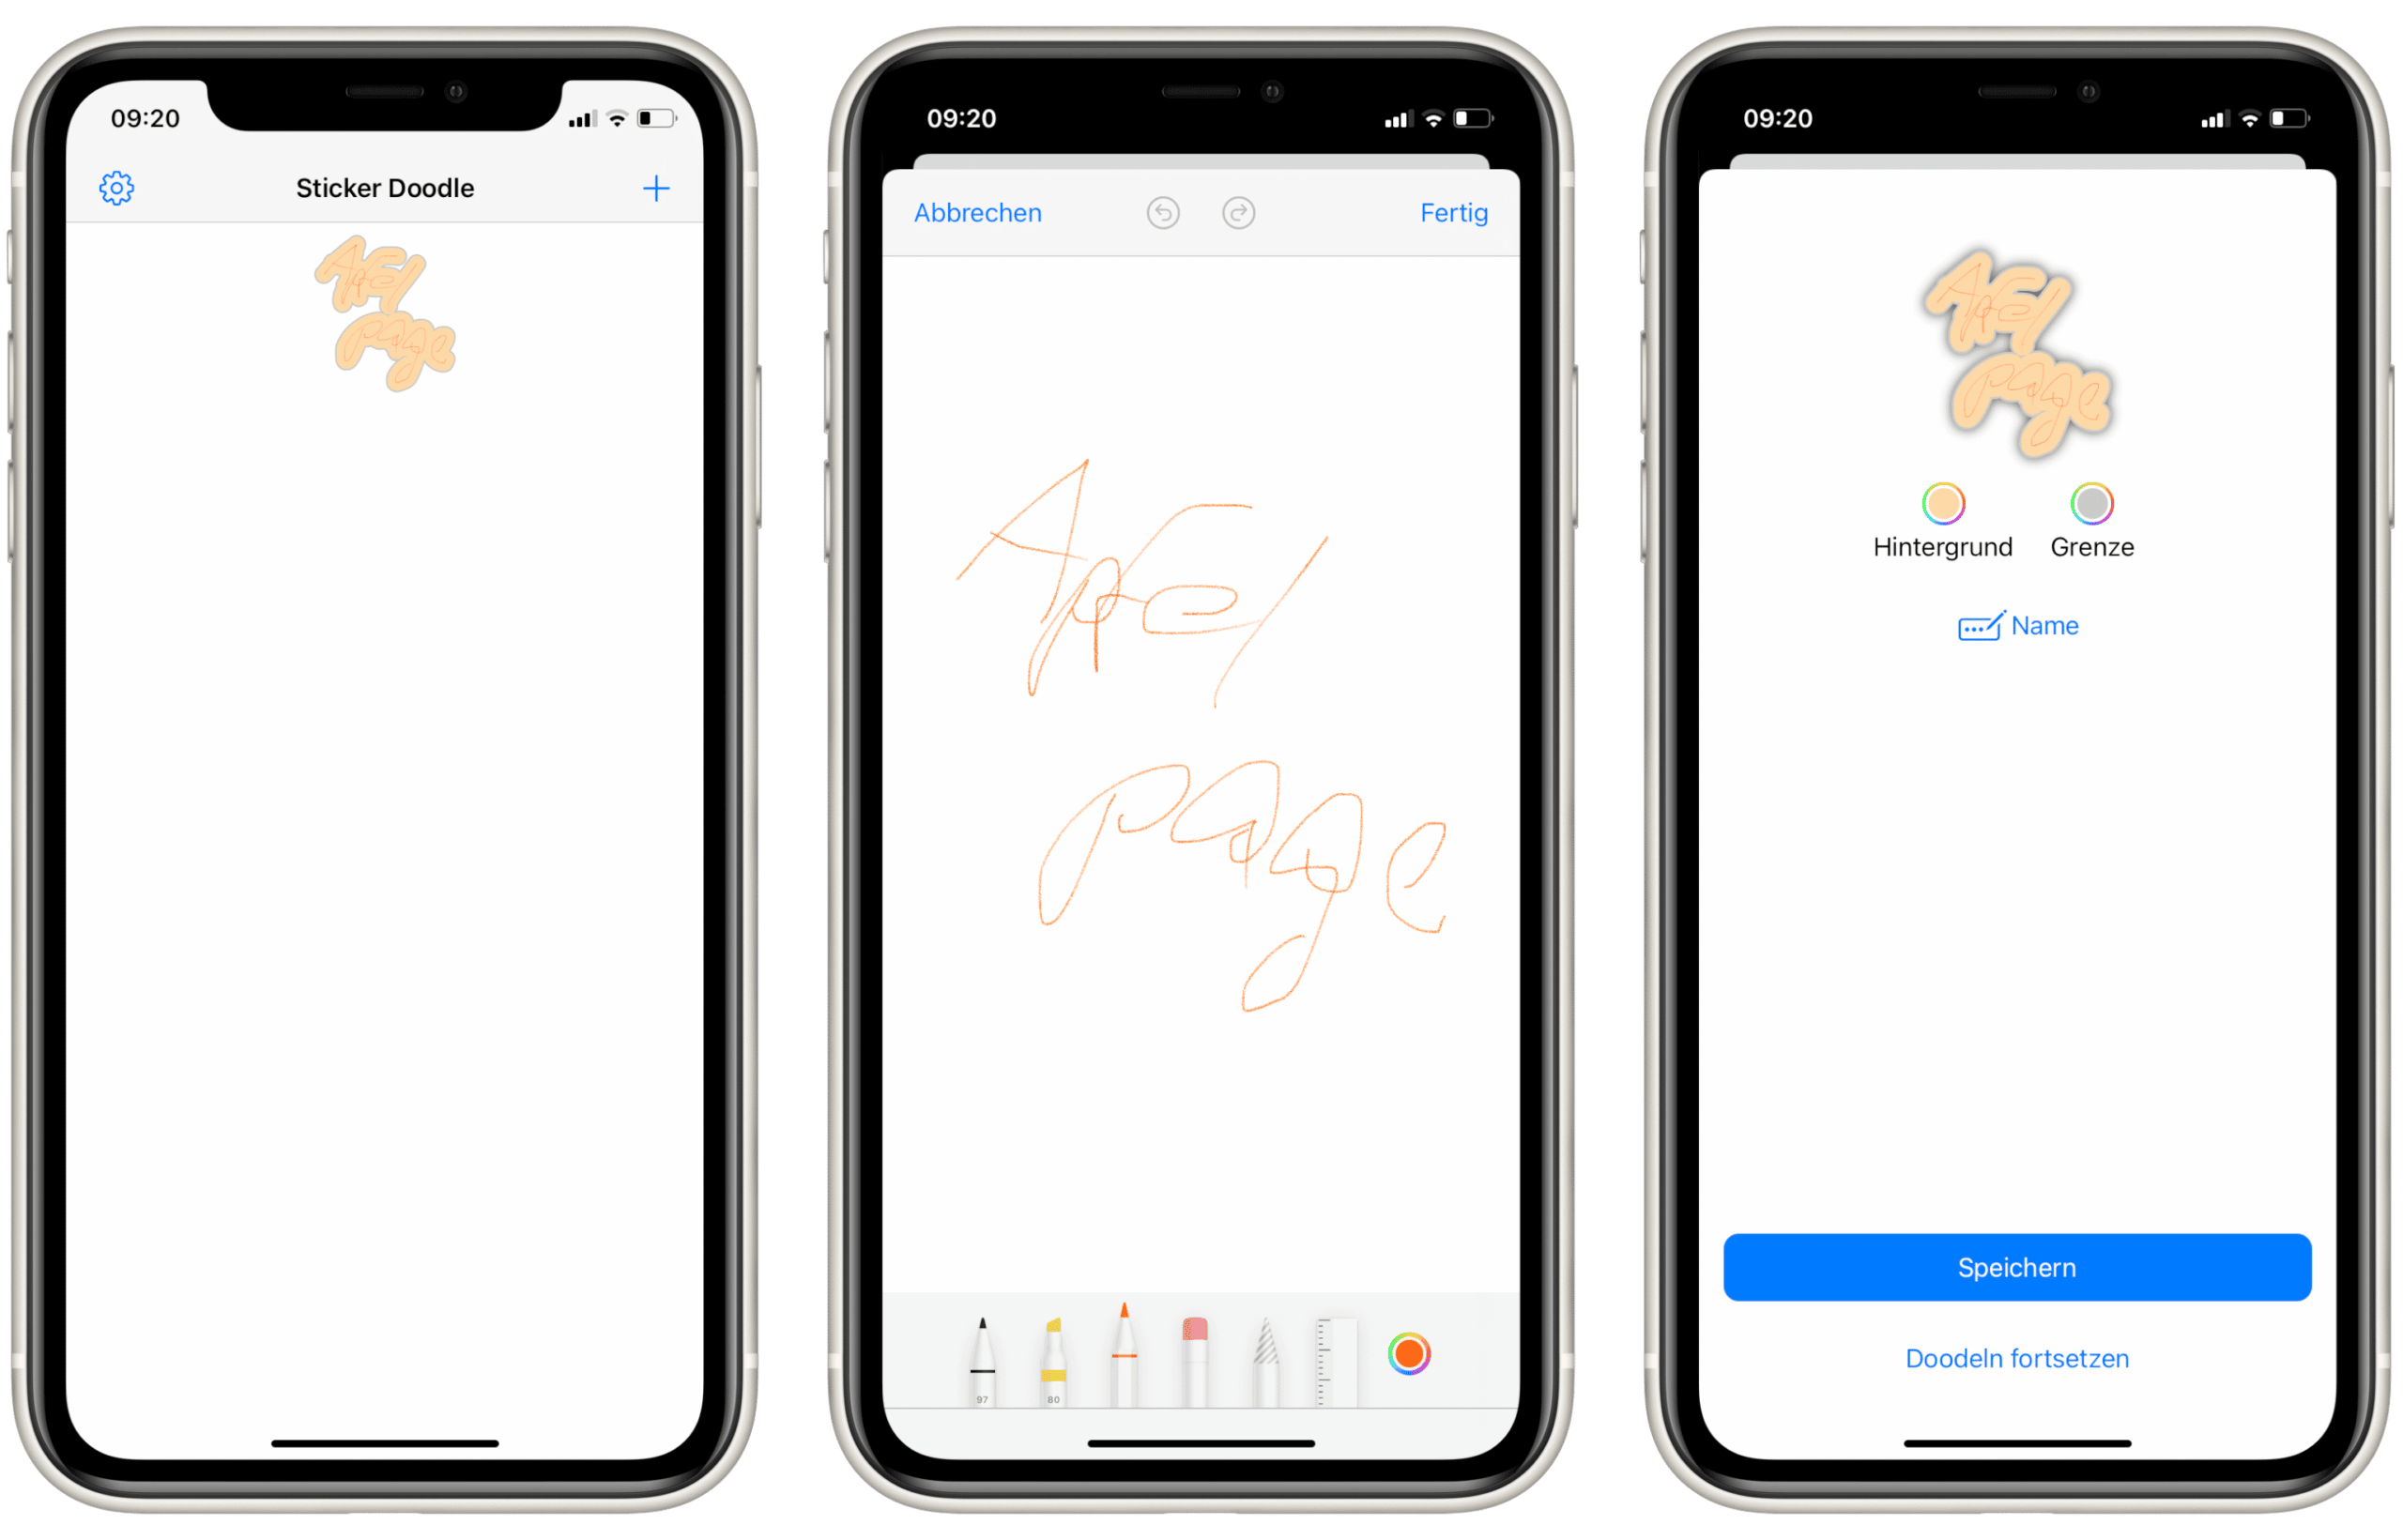 Sticker Doodle: App erstellt Sticker aus der Subjektauswahl von iOS 16 ›